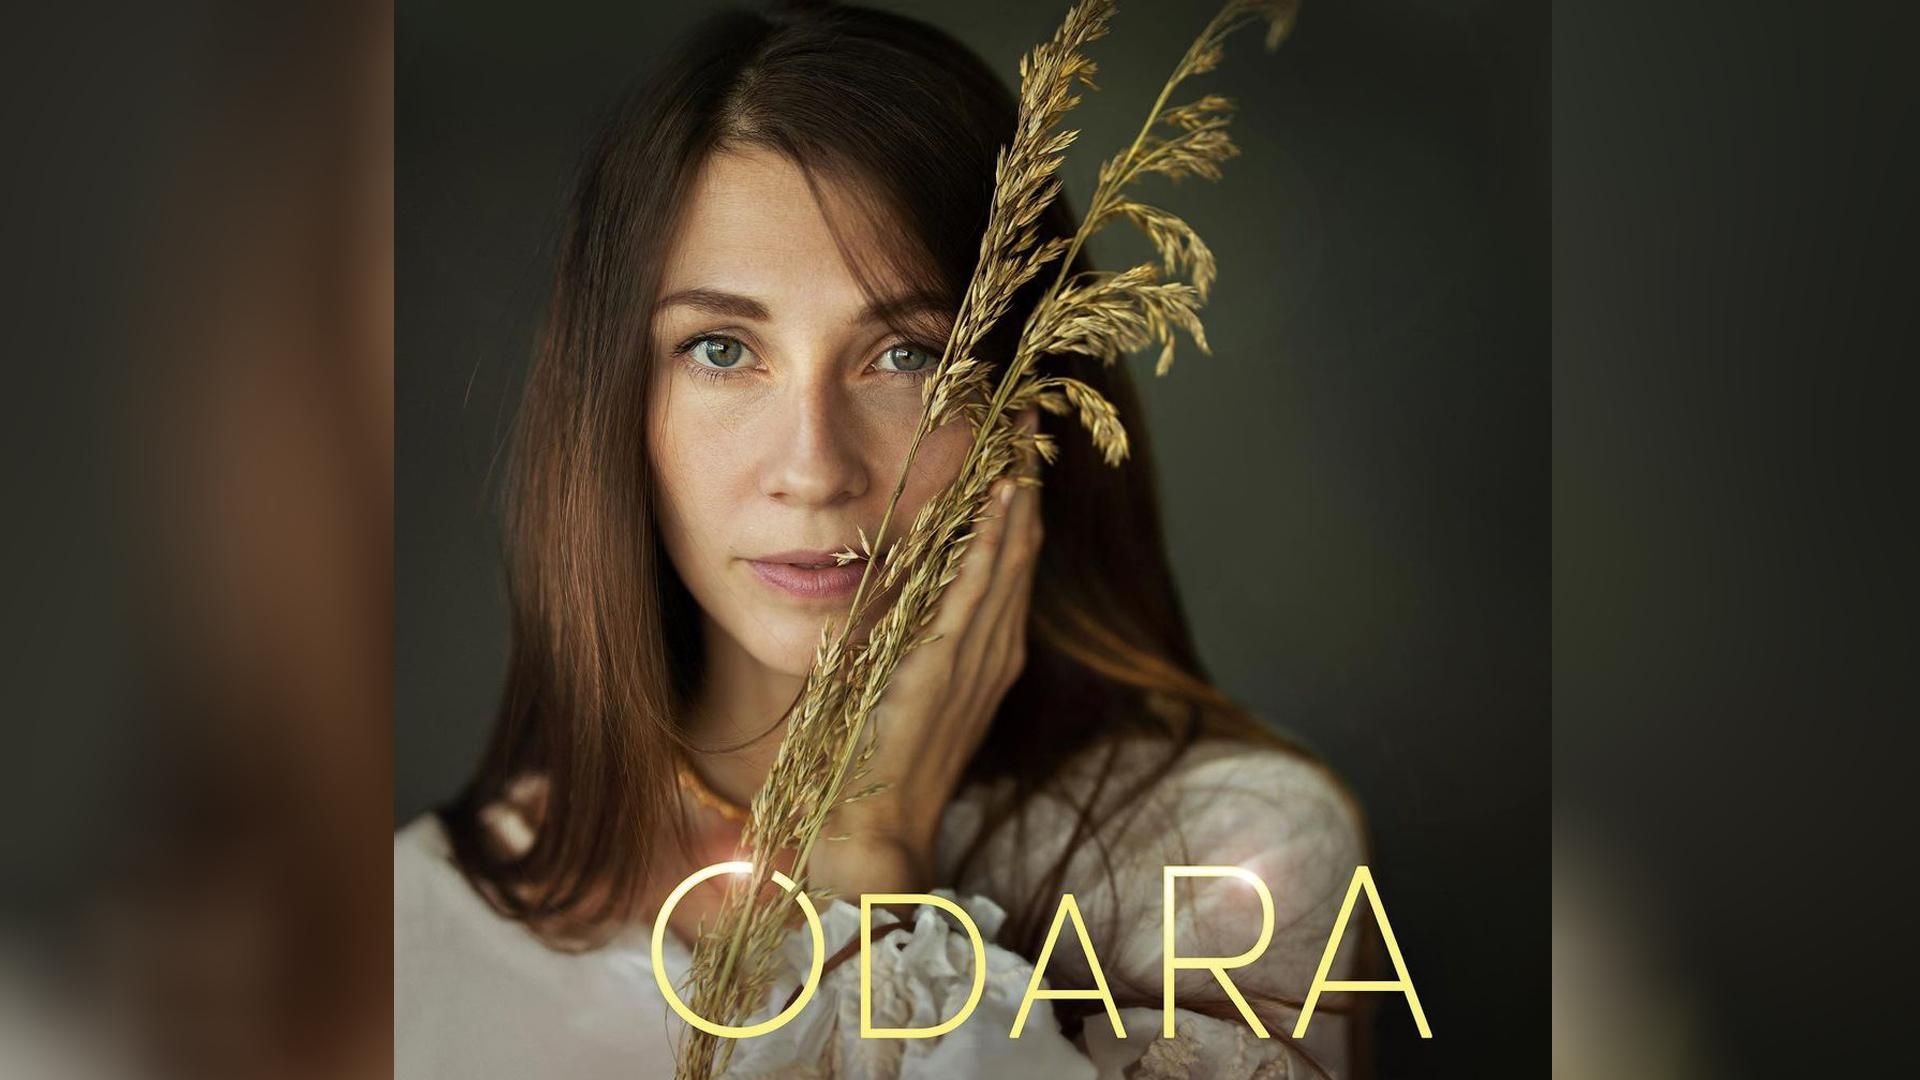 ODARA даст первый сольный концерт в Киеве: чем будет удивлять артистка - Афиша